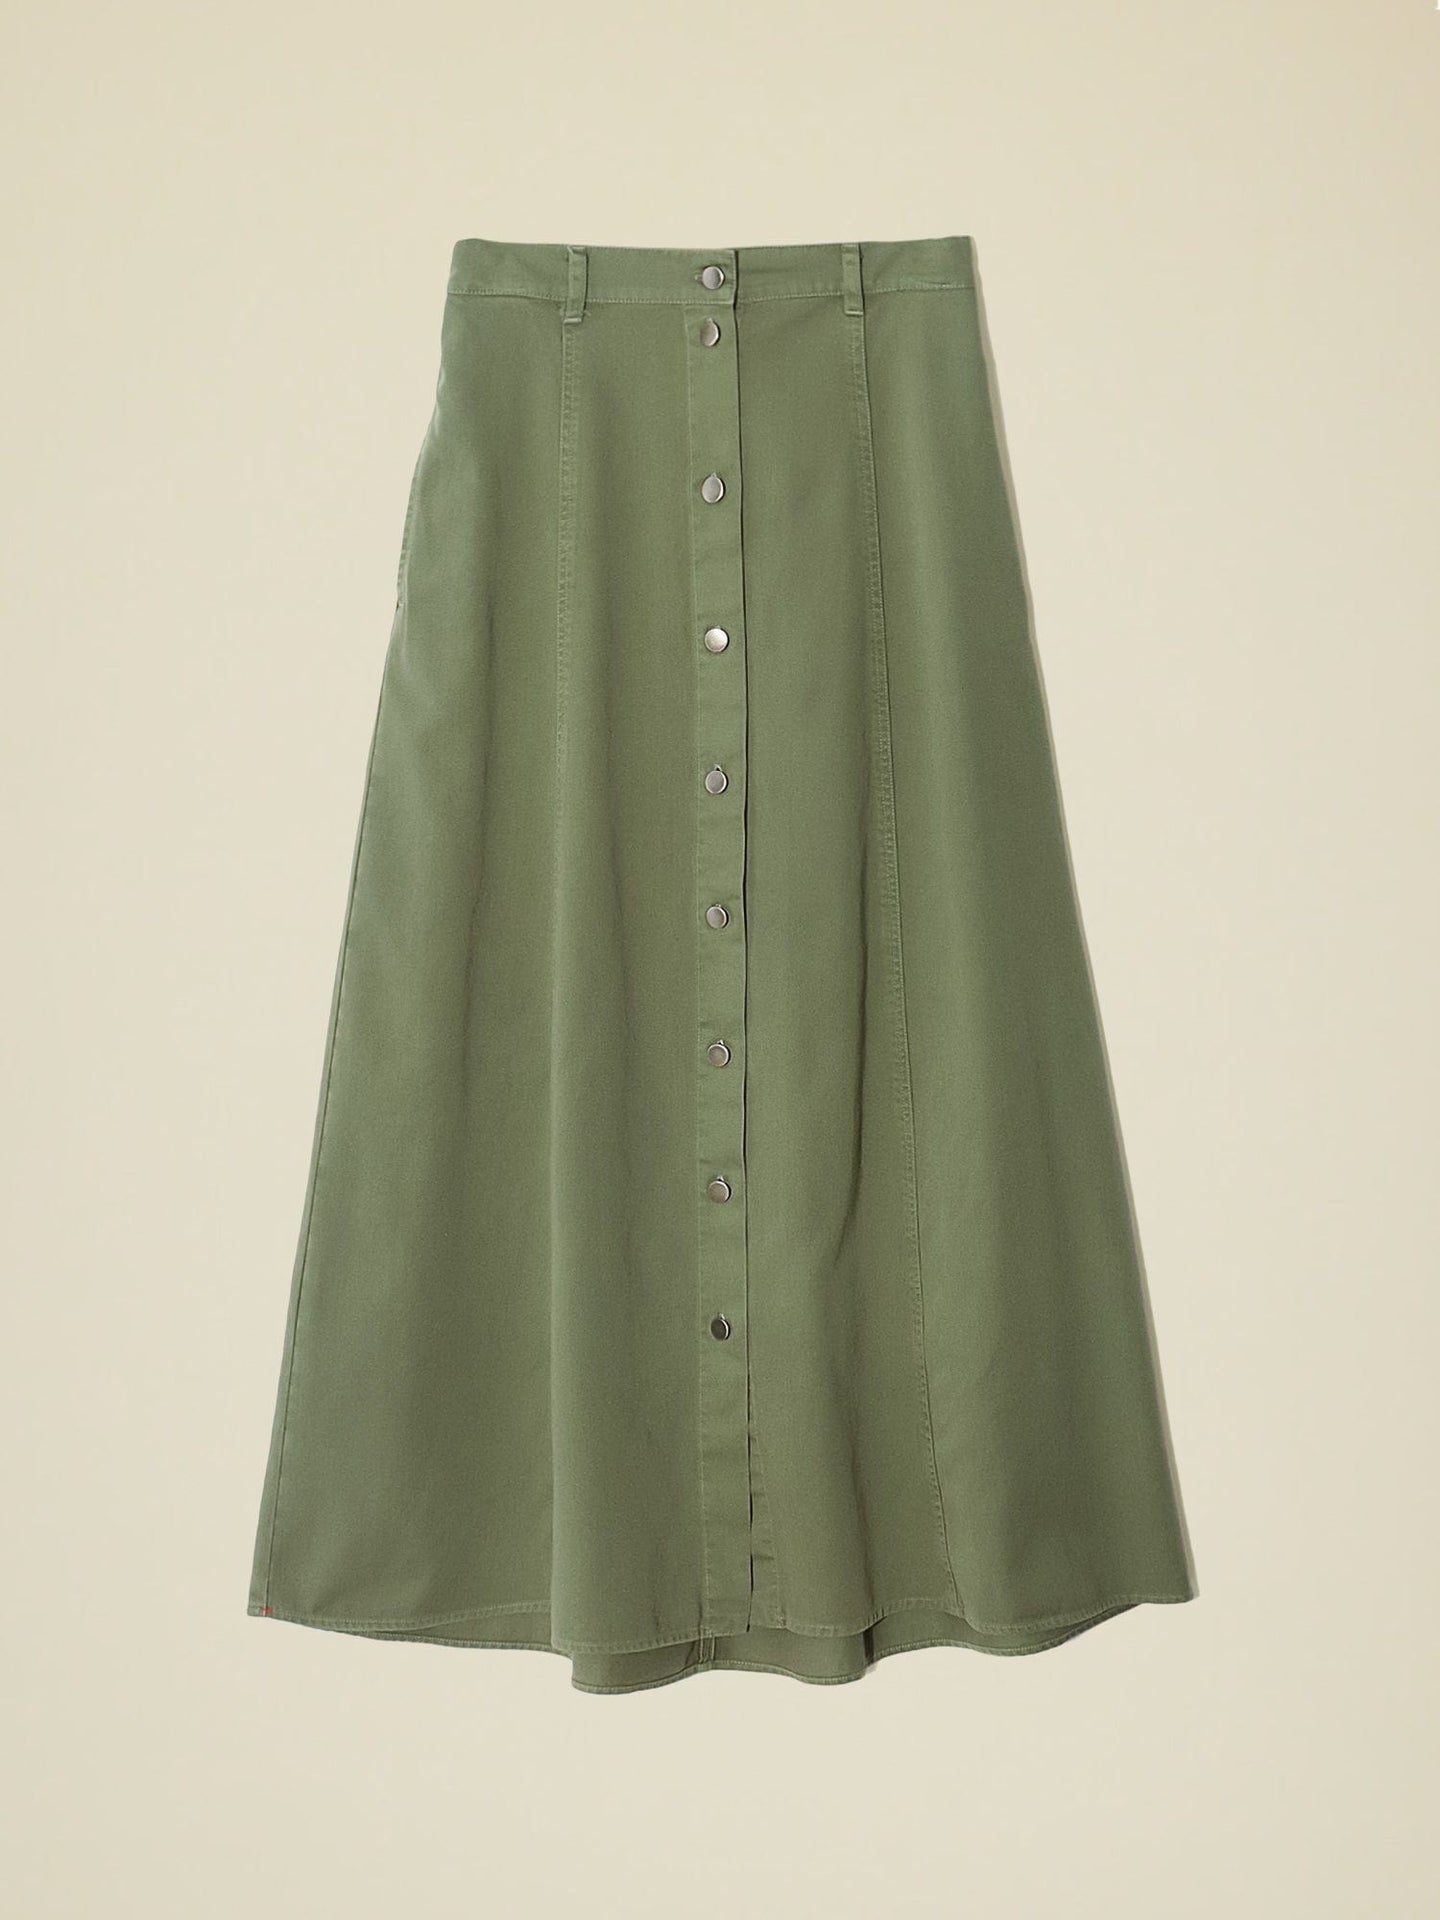 Skirt X357704 Spence Skirt Vintage-Pine